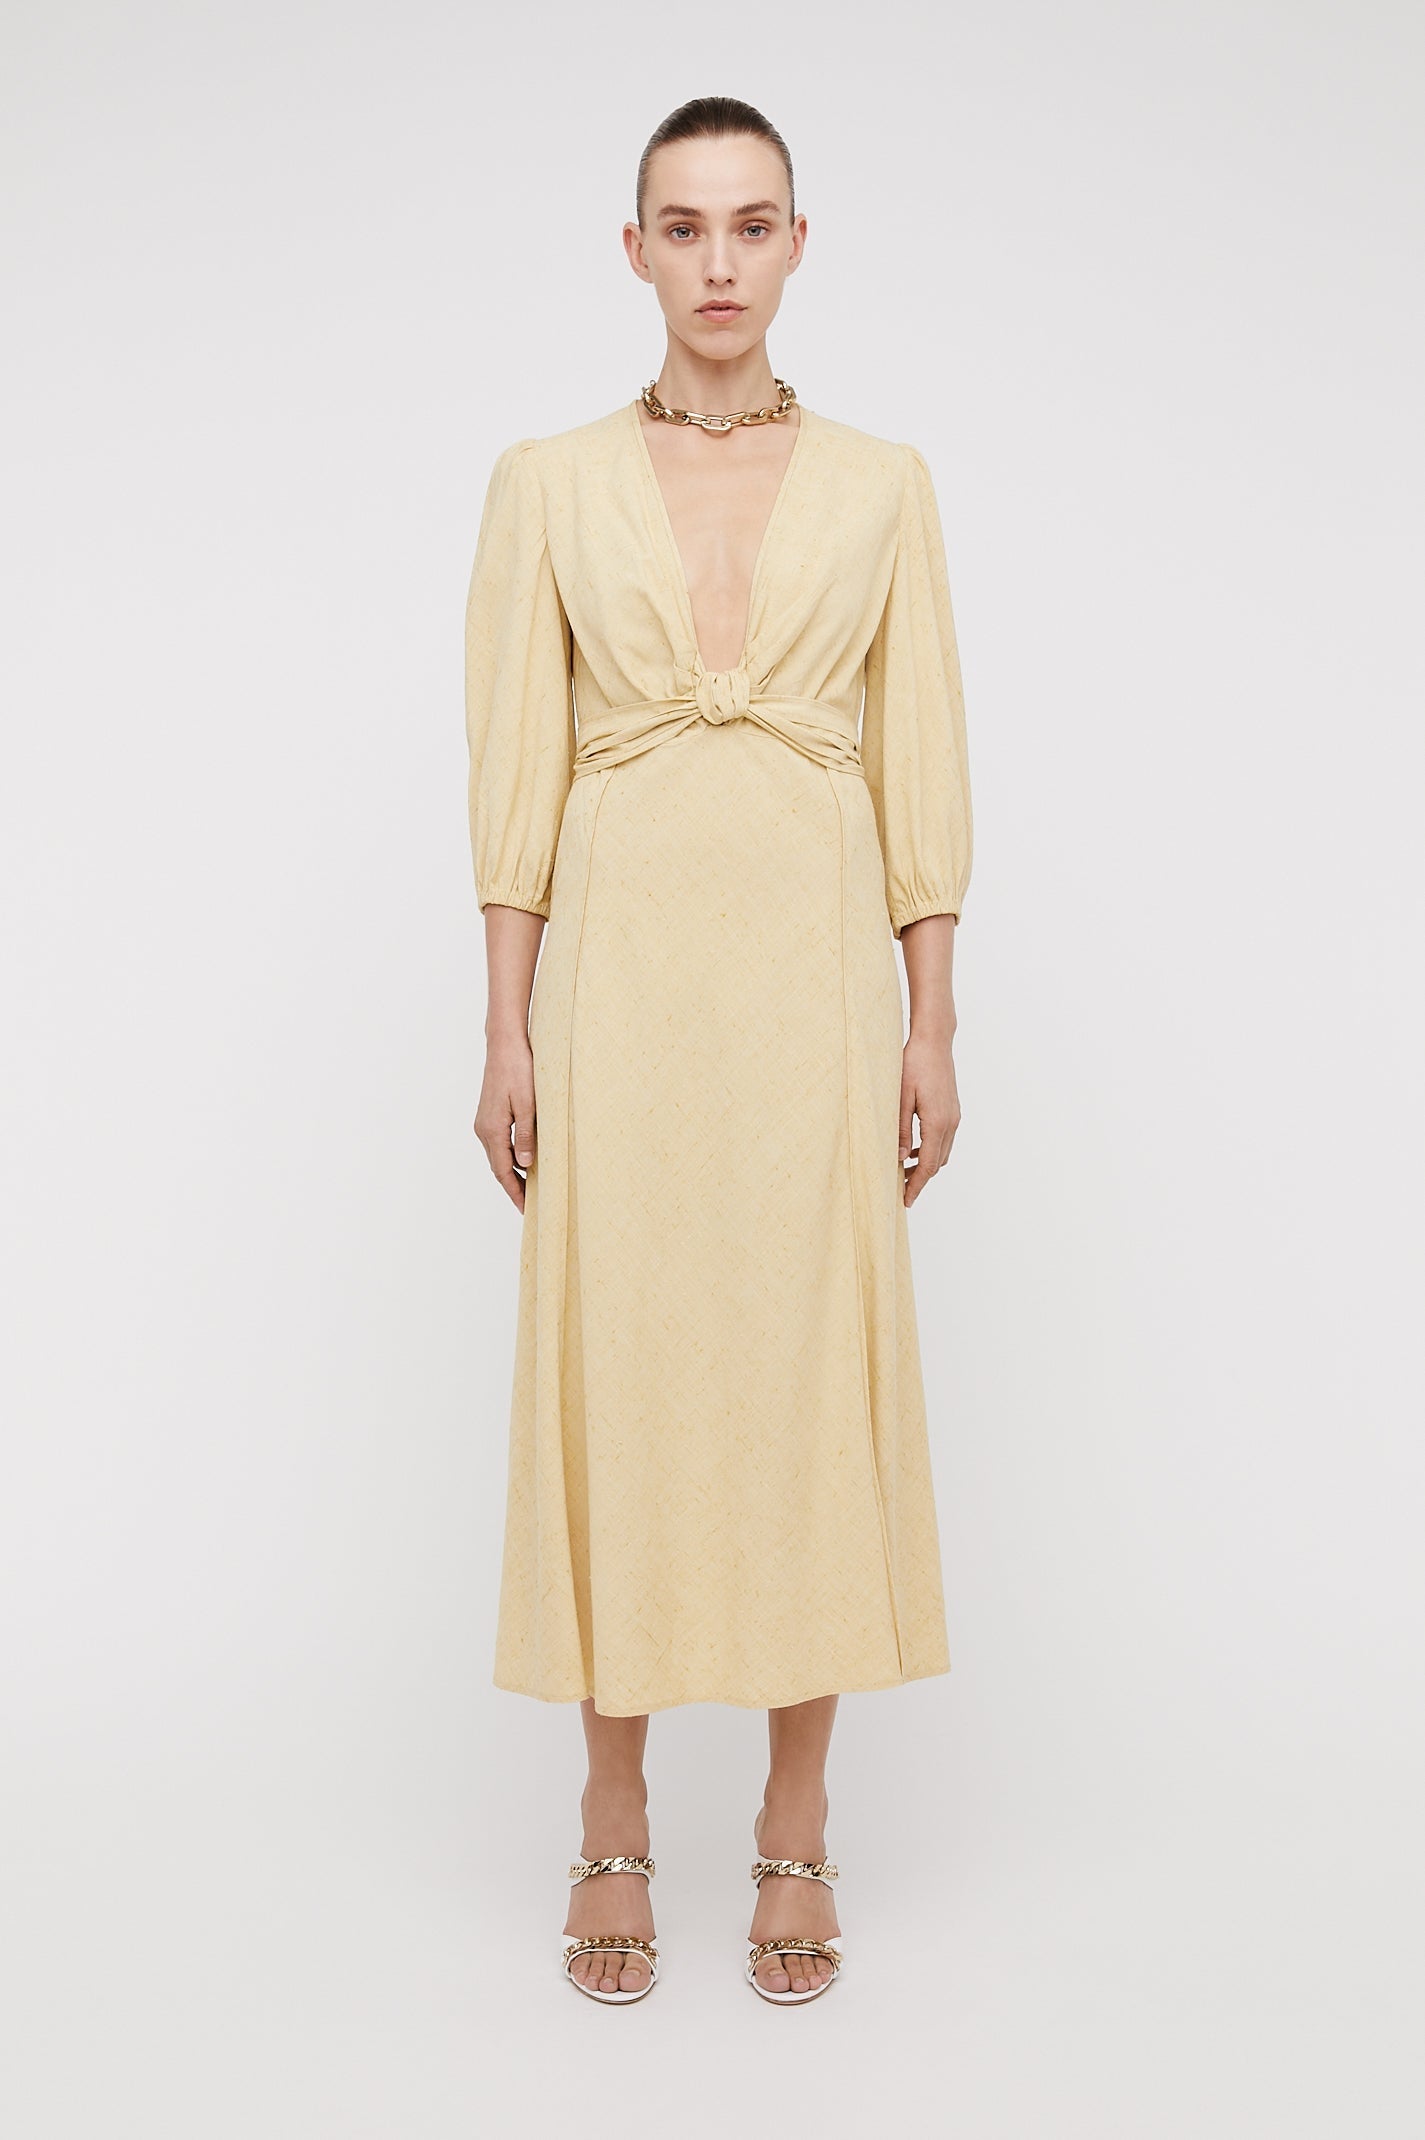 Italian Textured Weave Dress Butter BUTTER - Scanlan Theodore US